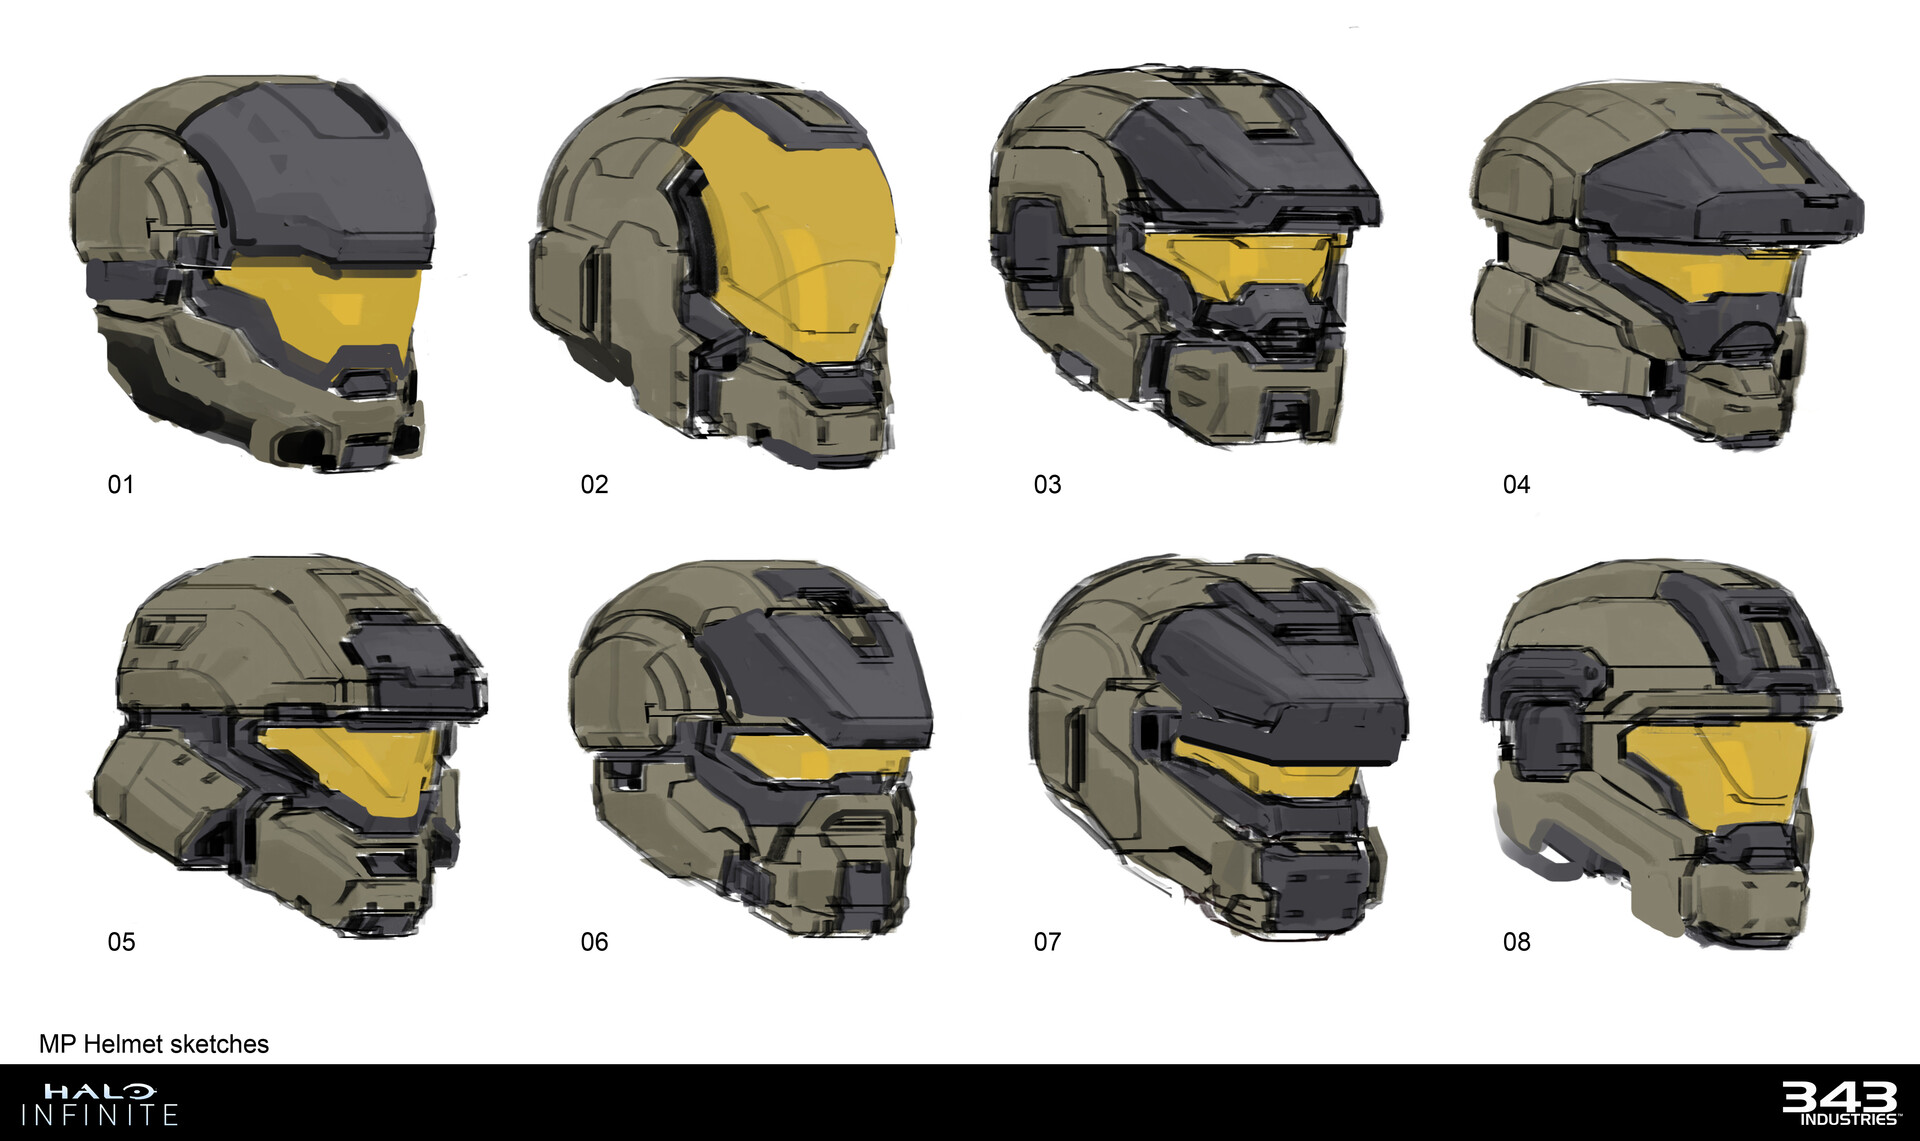 Spartan Helmet sketches by Sam Brown.